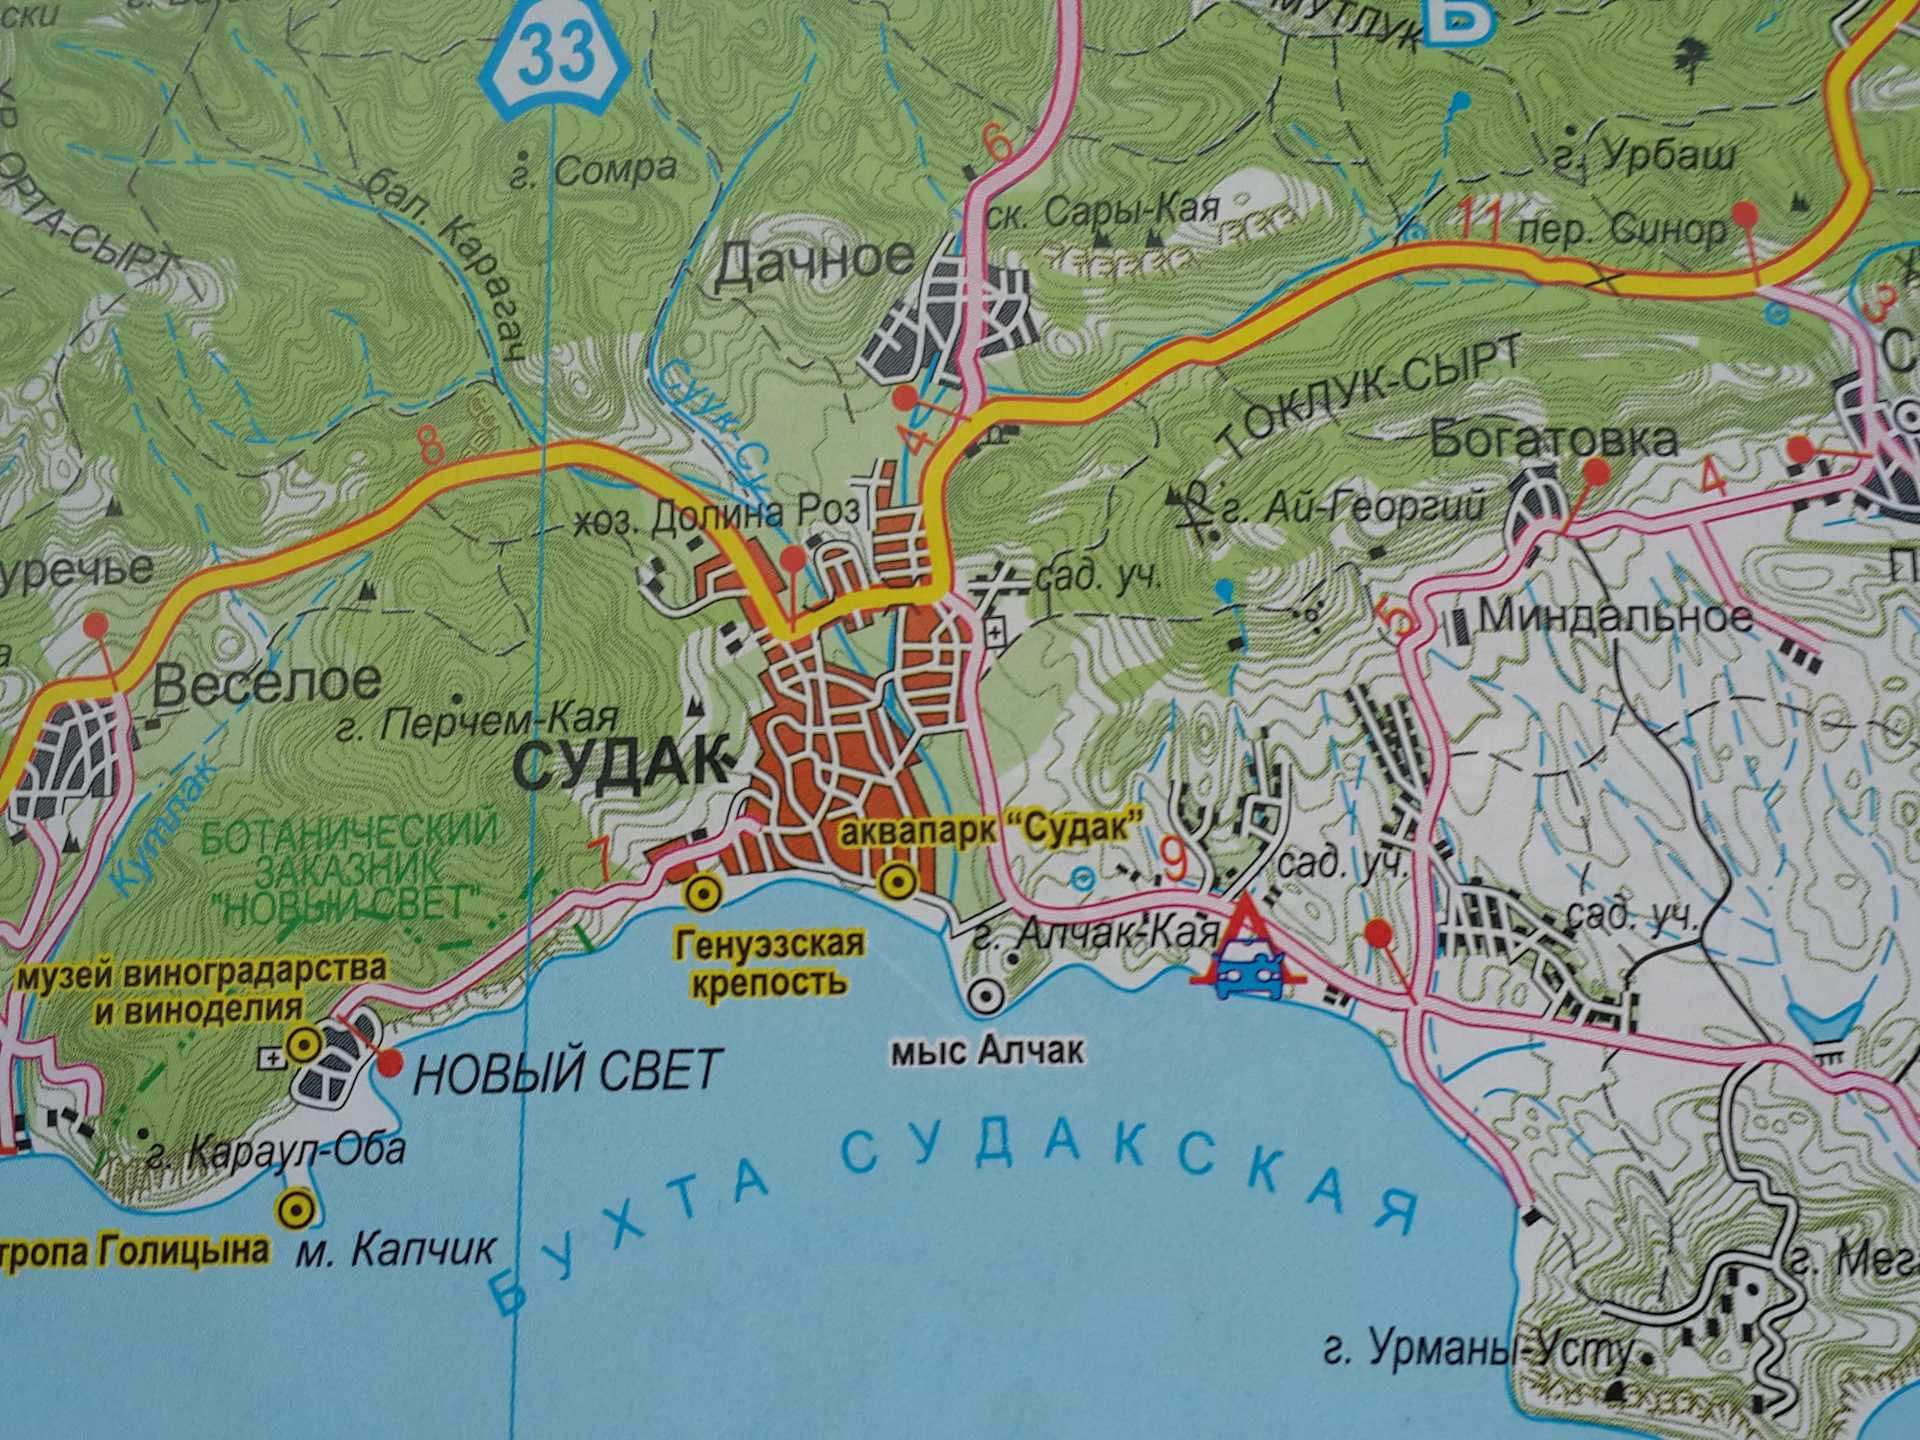 Крымские каникулы – судак и новый свет – все про туризм